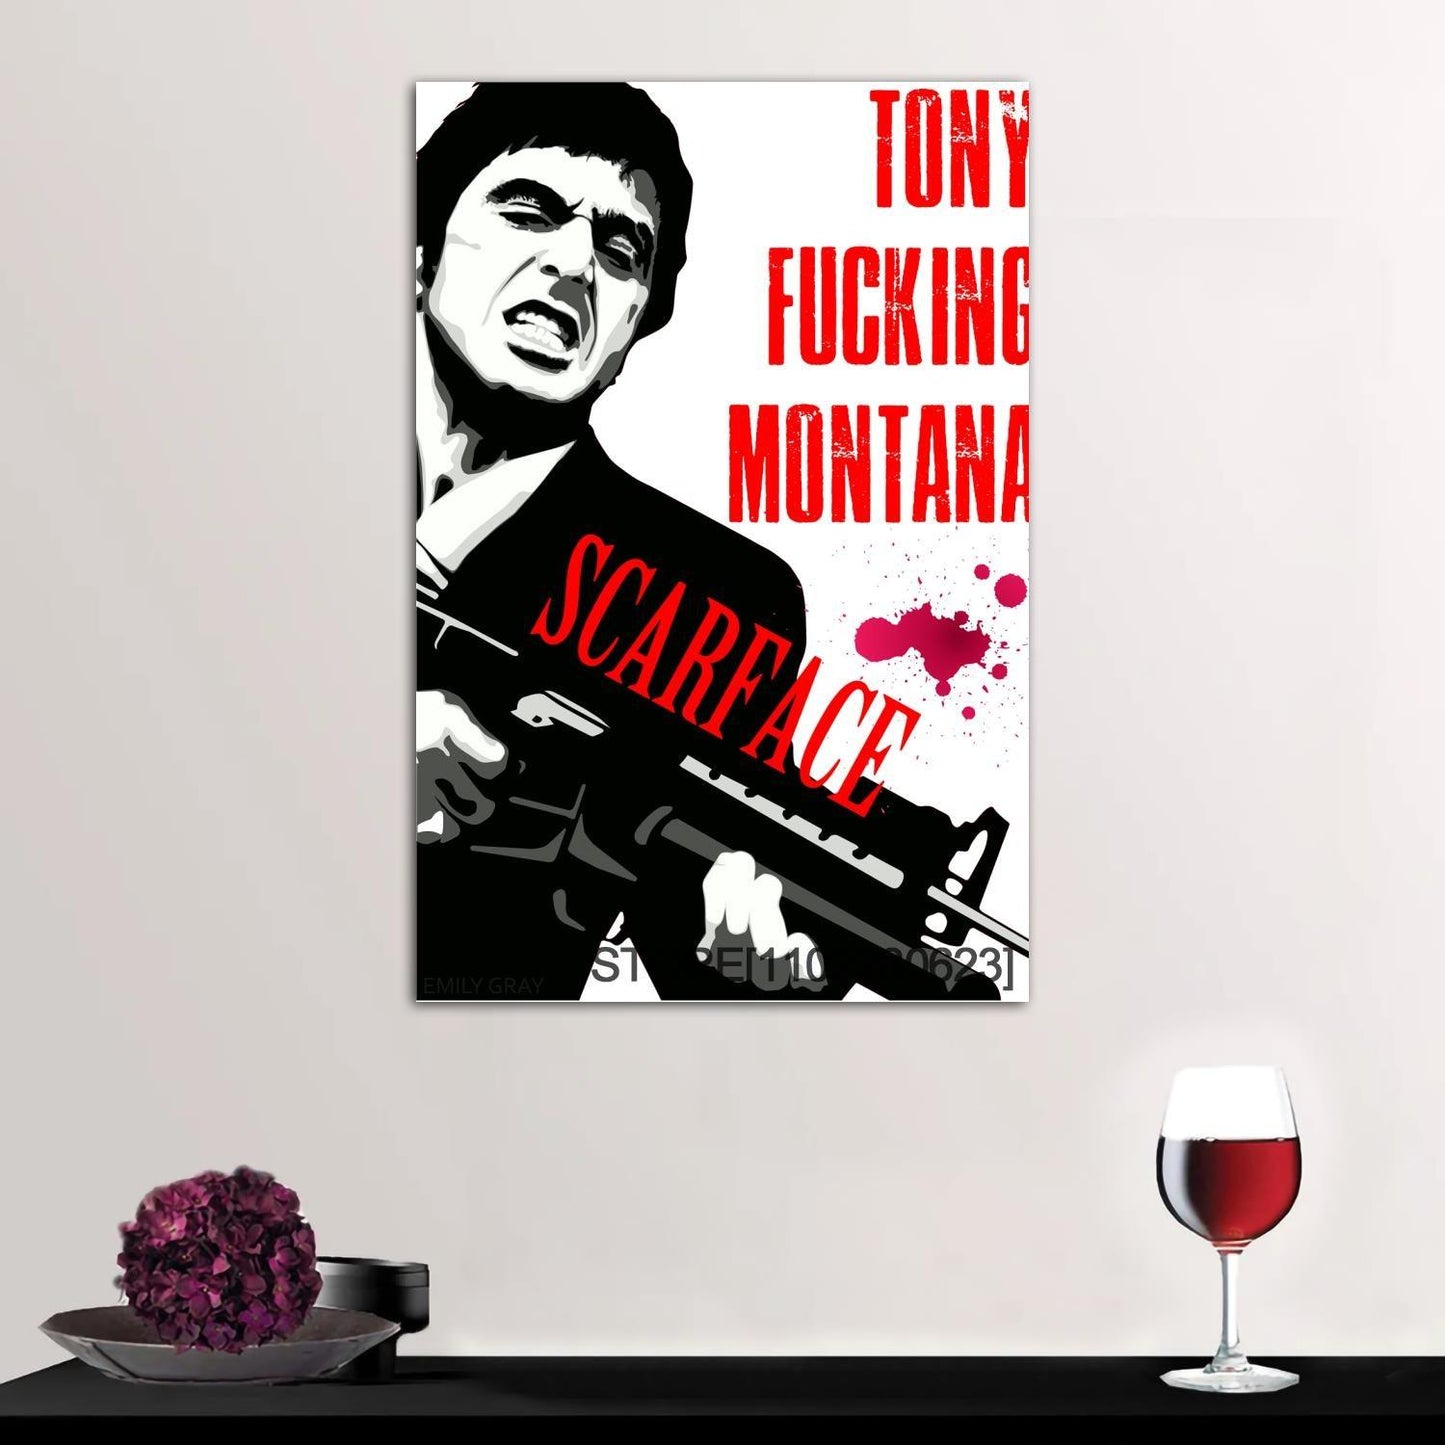 Scarface Tony Fucking Montana Movie Wall Art Poster - Aesthetic Wall Decor